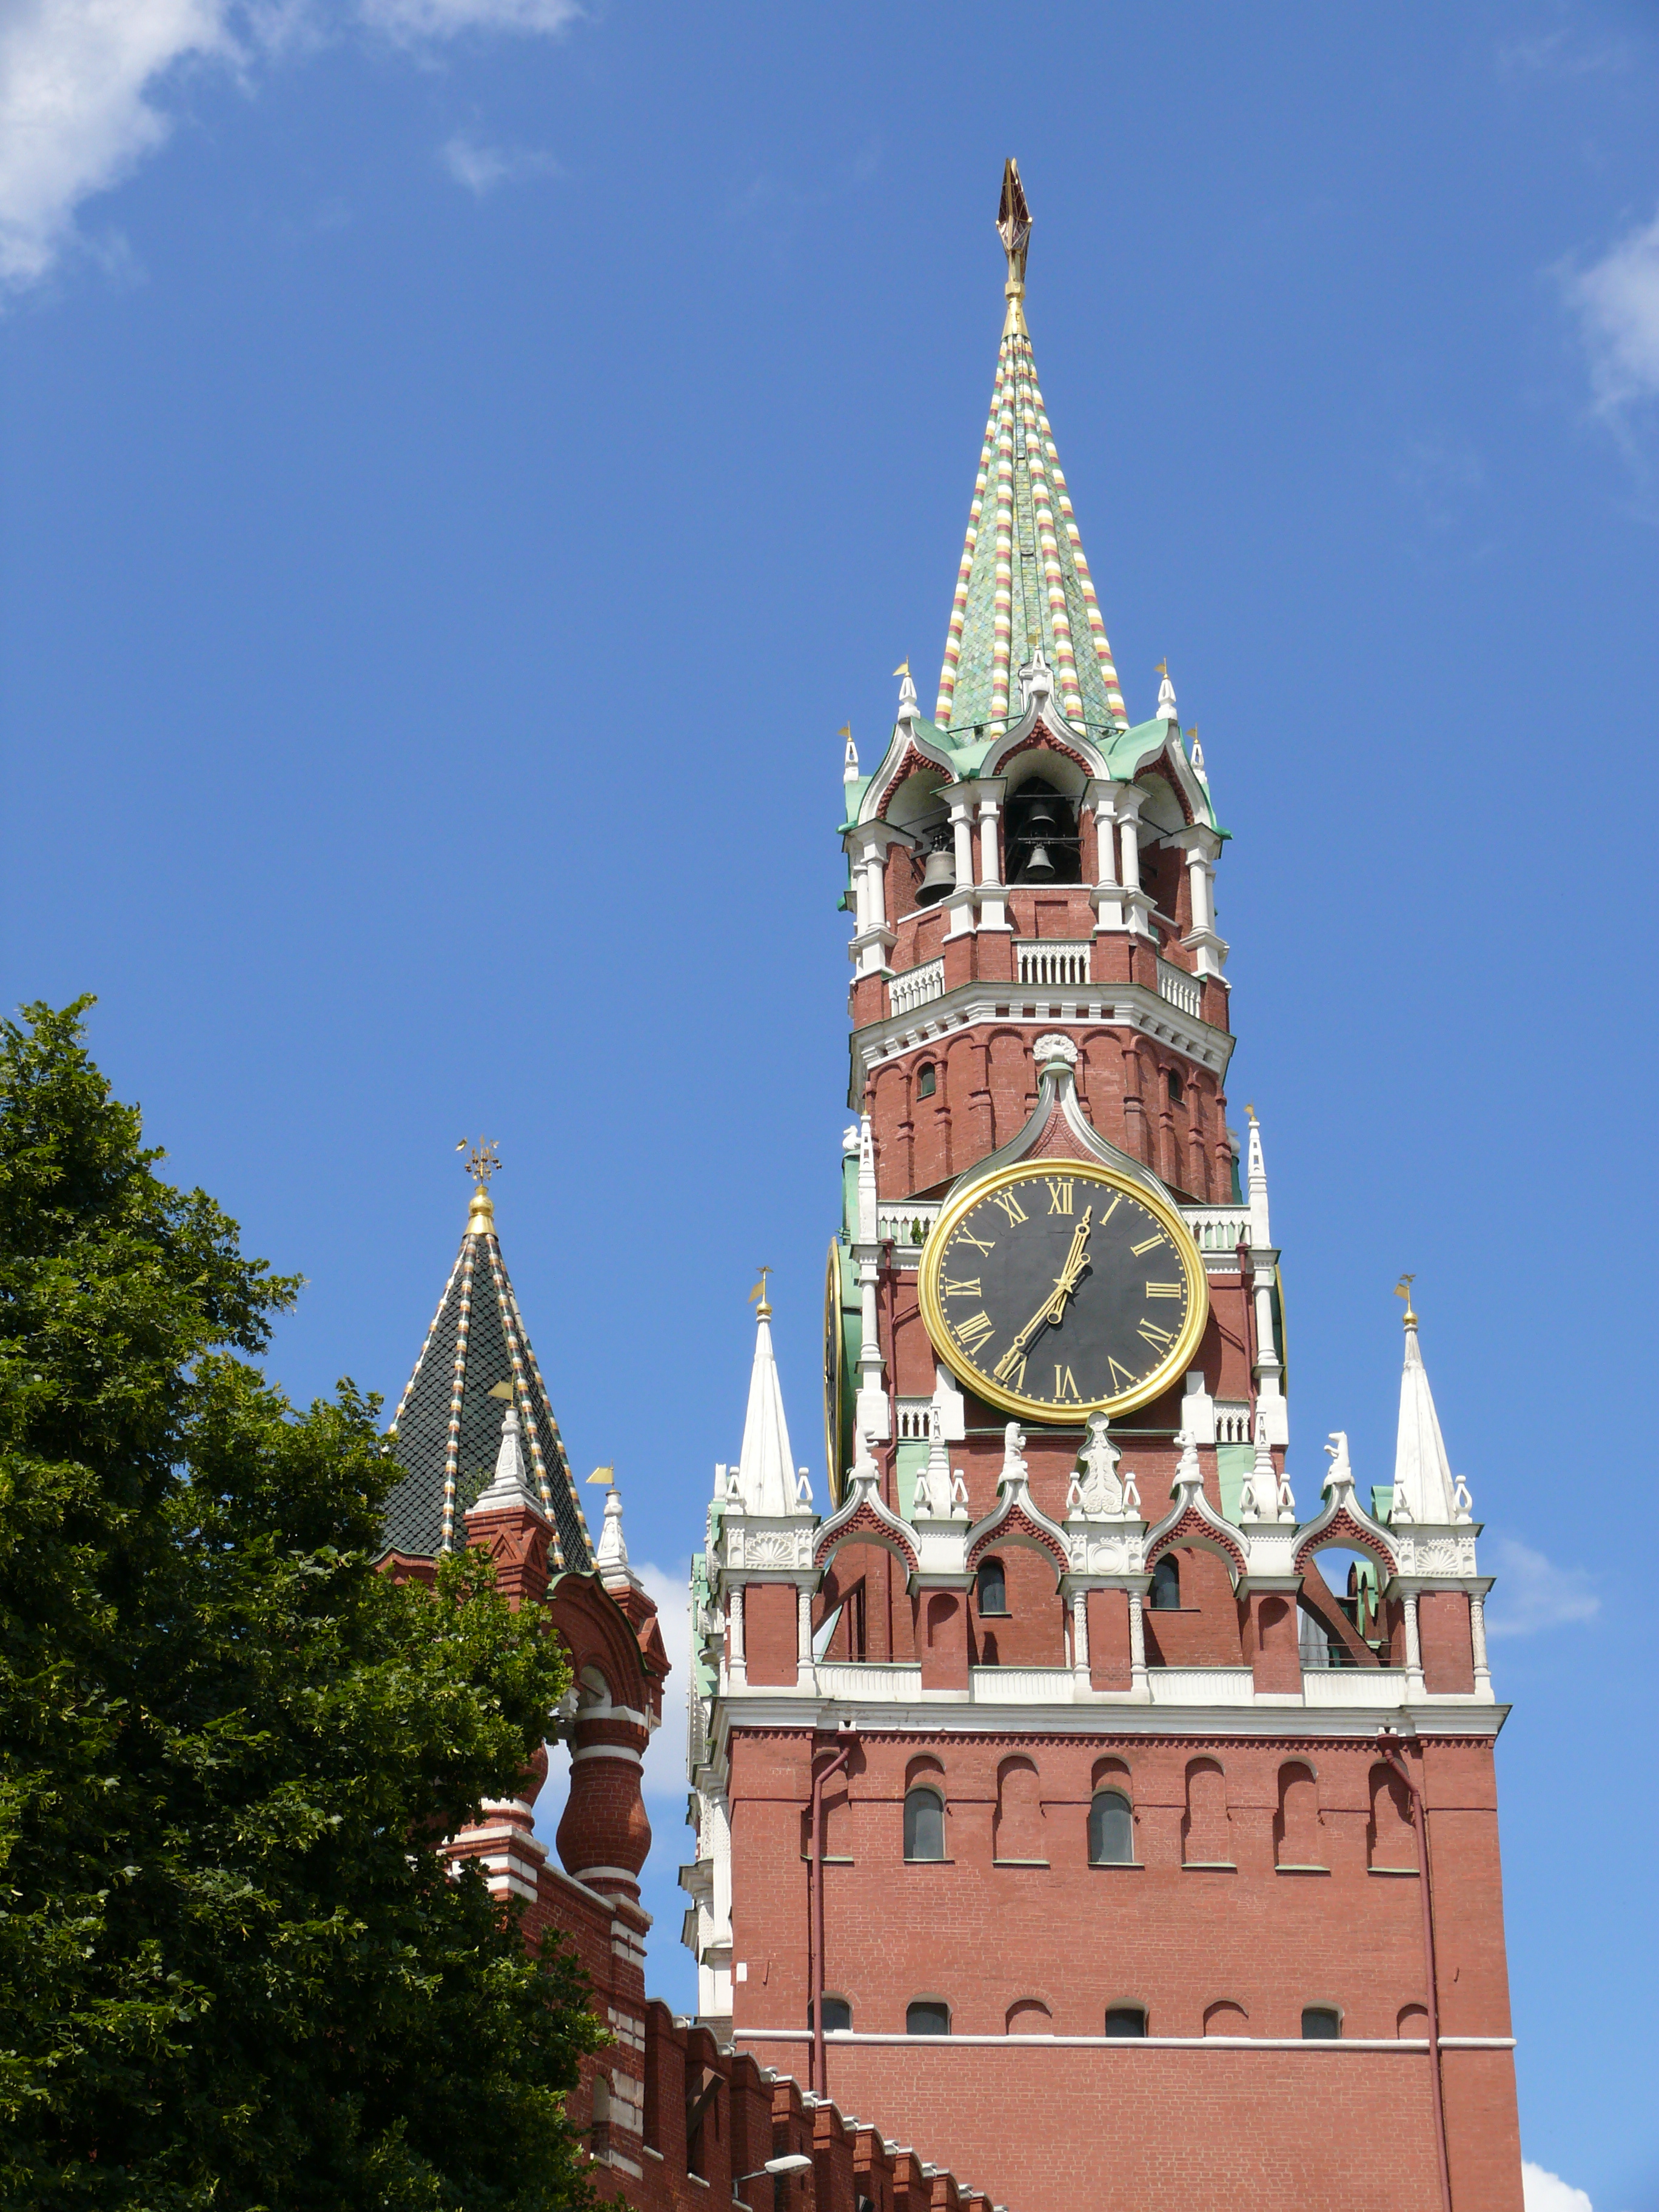 Часы на красной площади в москве